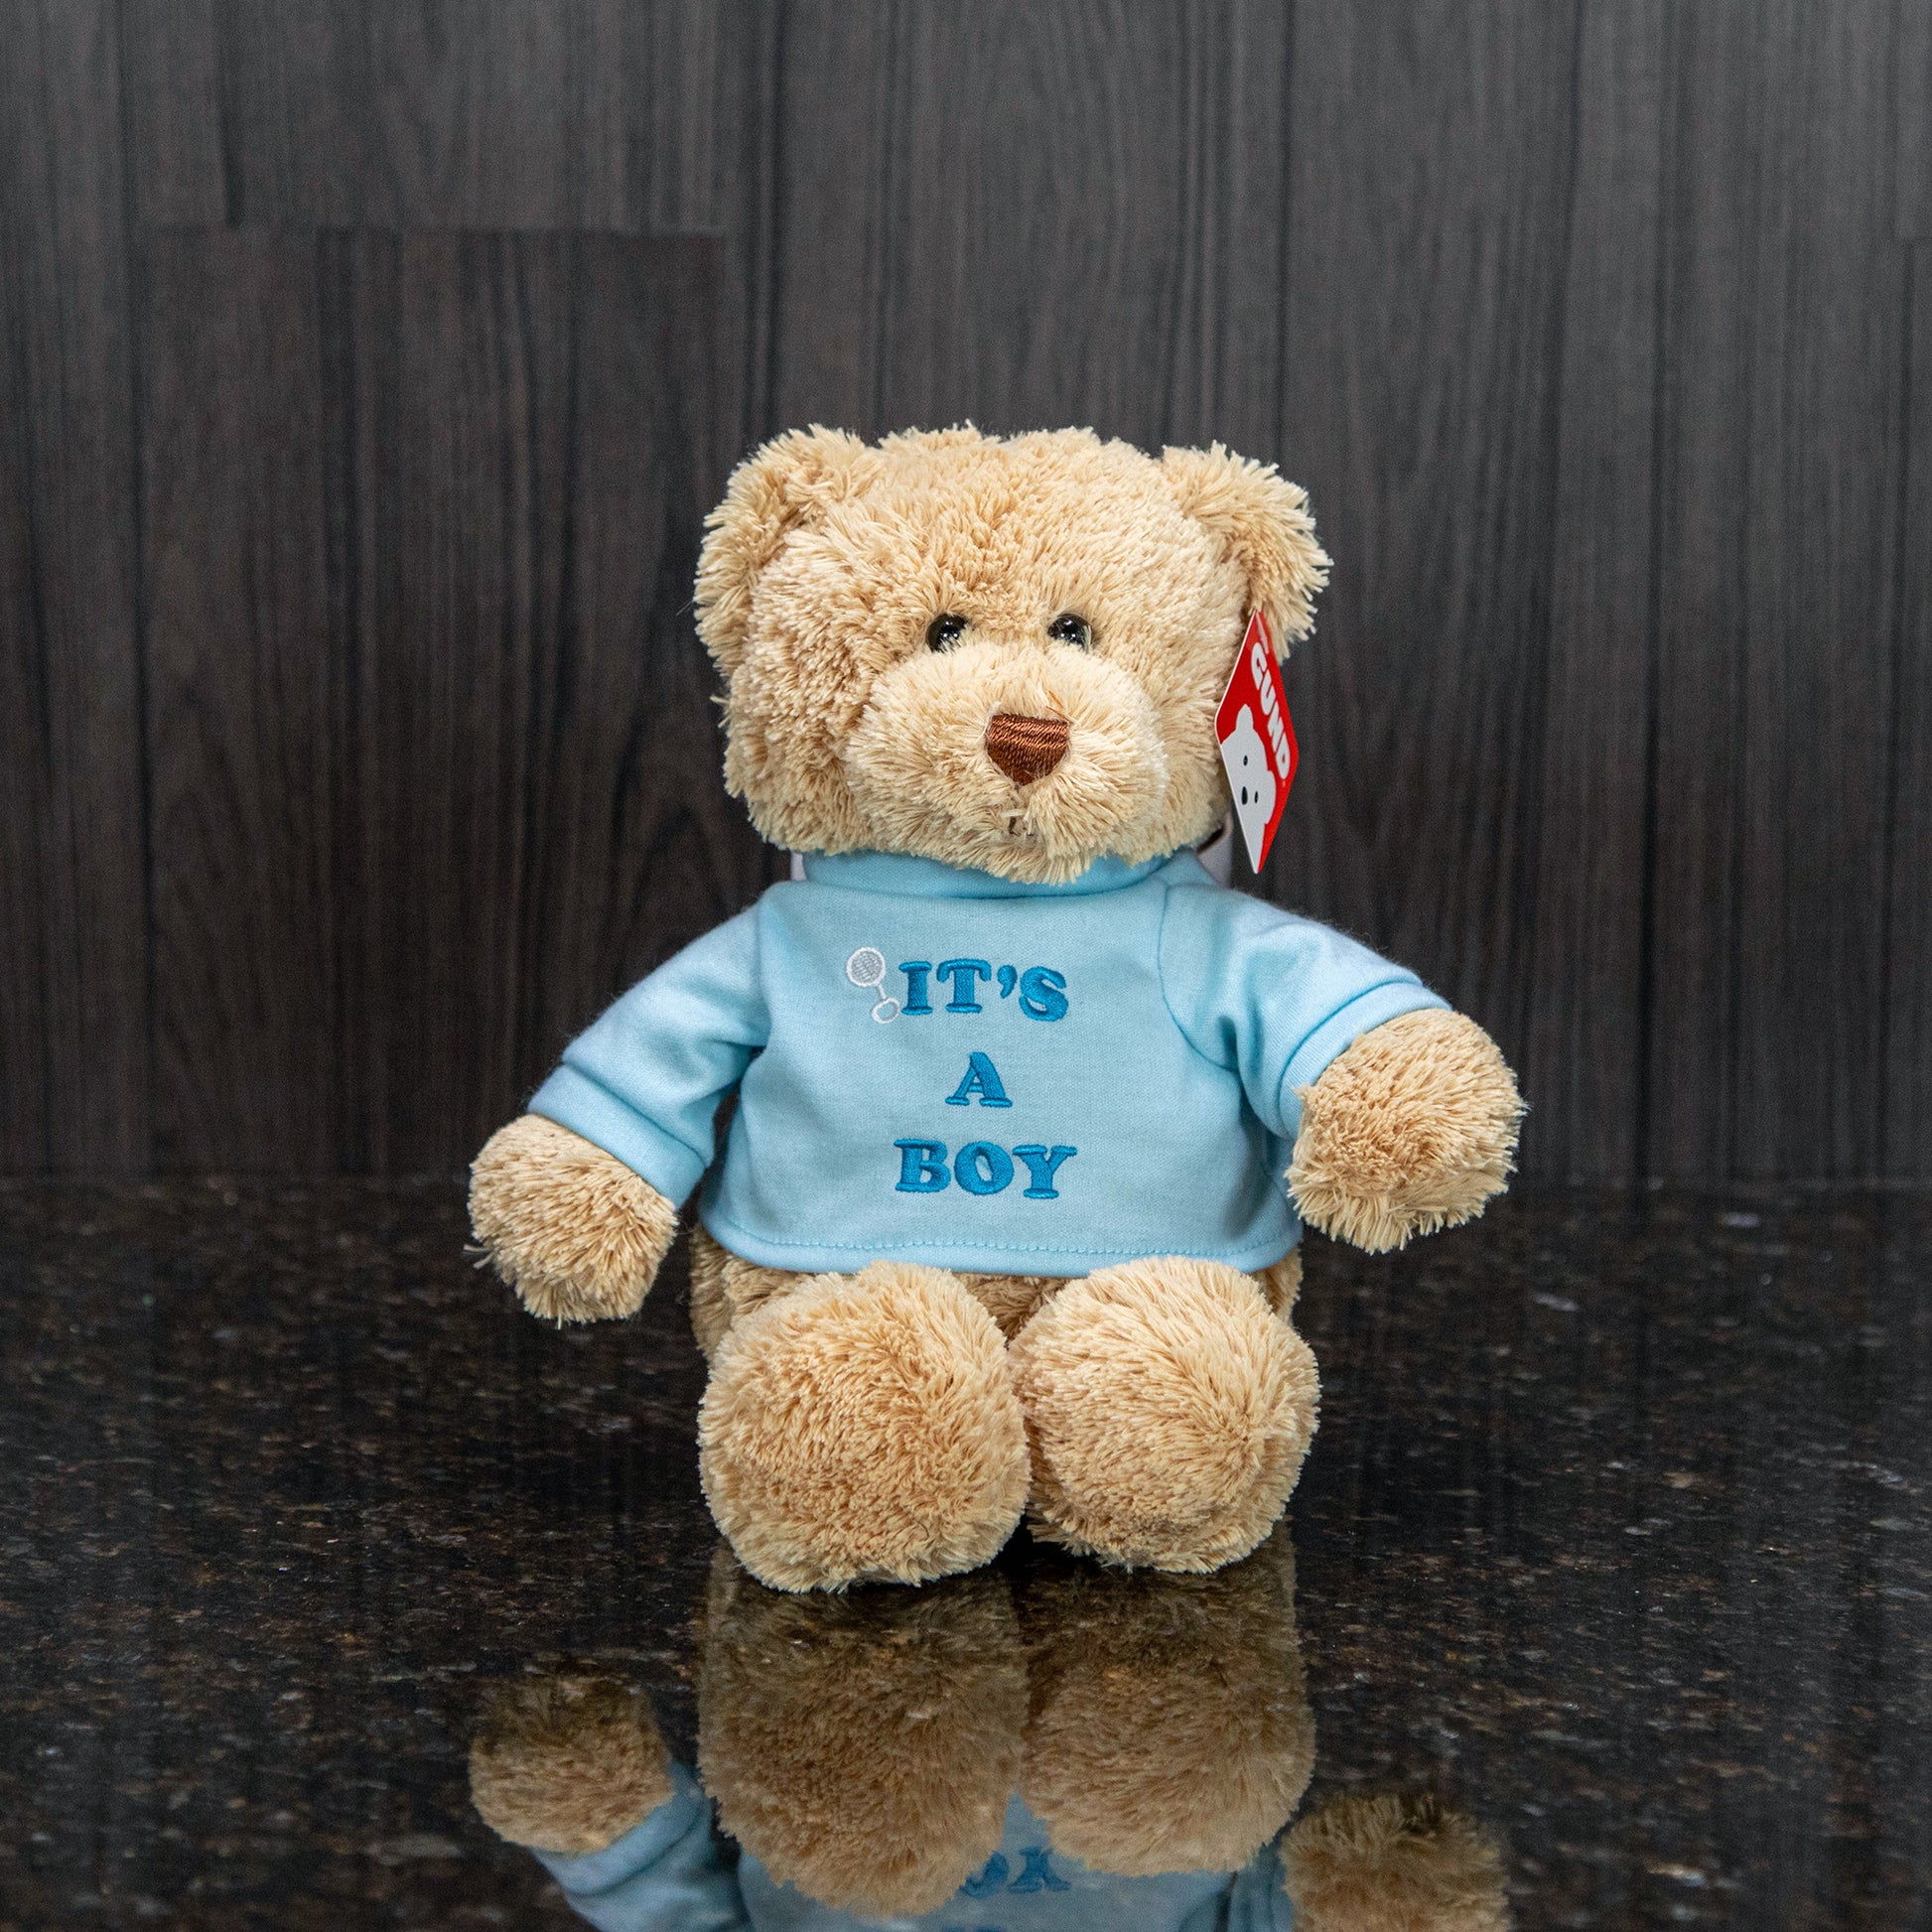 a light brown bear wearing a blue shirt that reads "it's a boy!"